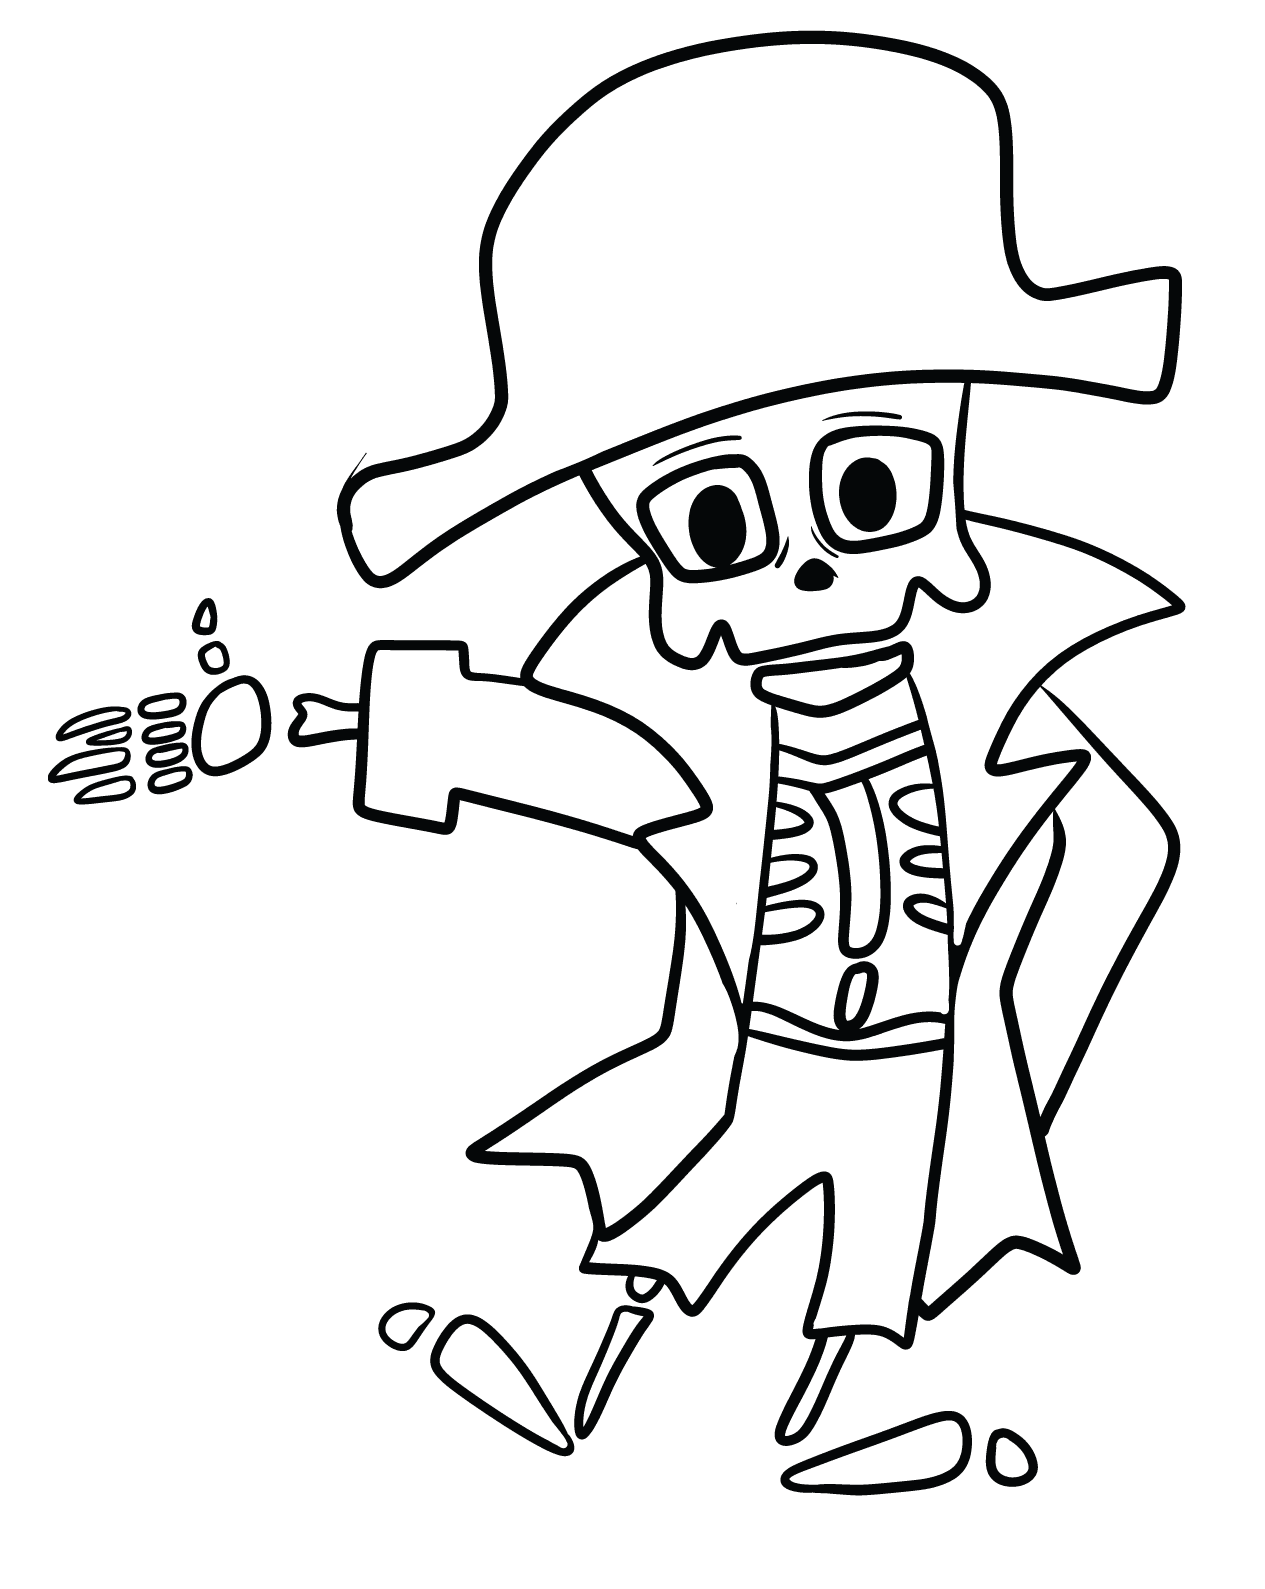 Пиратский скелет для печати из пирата